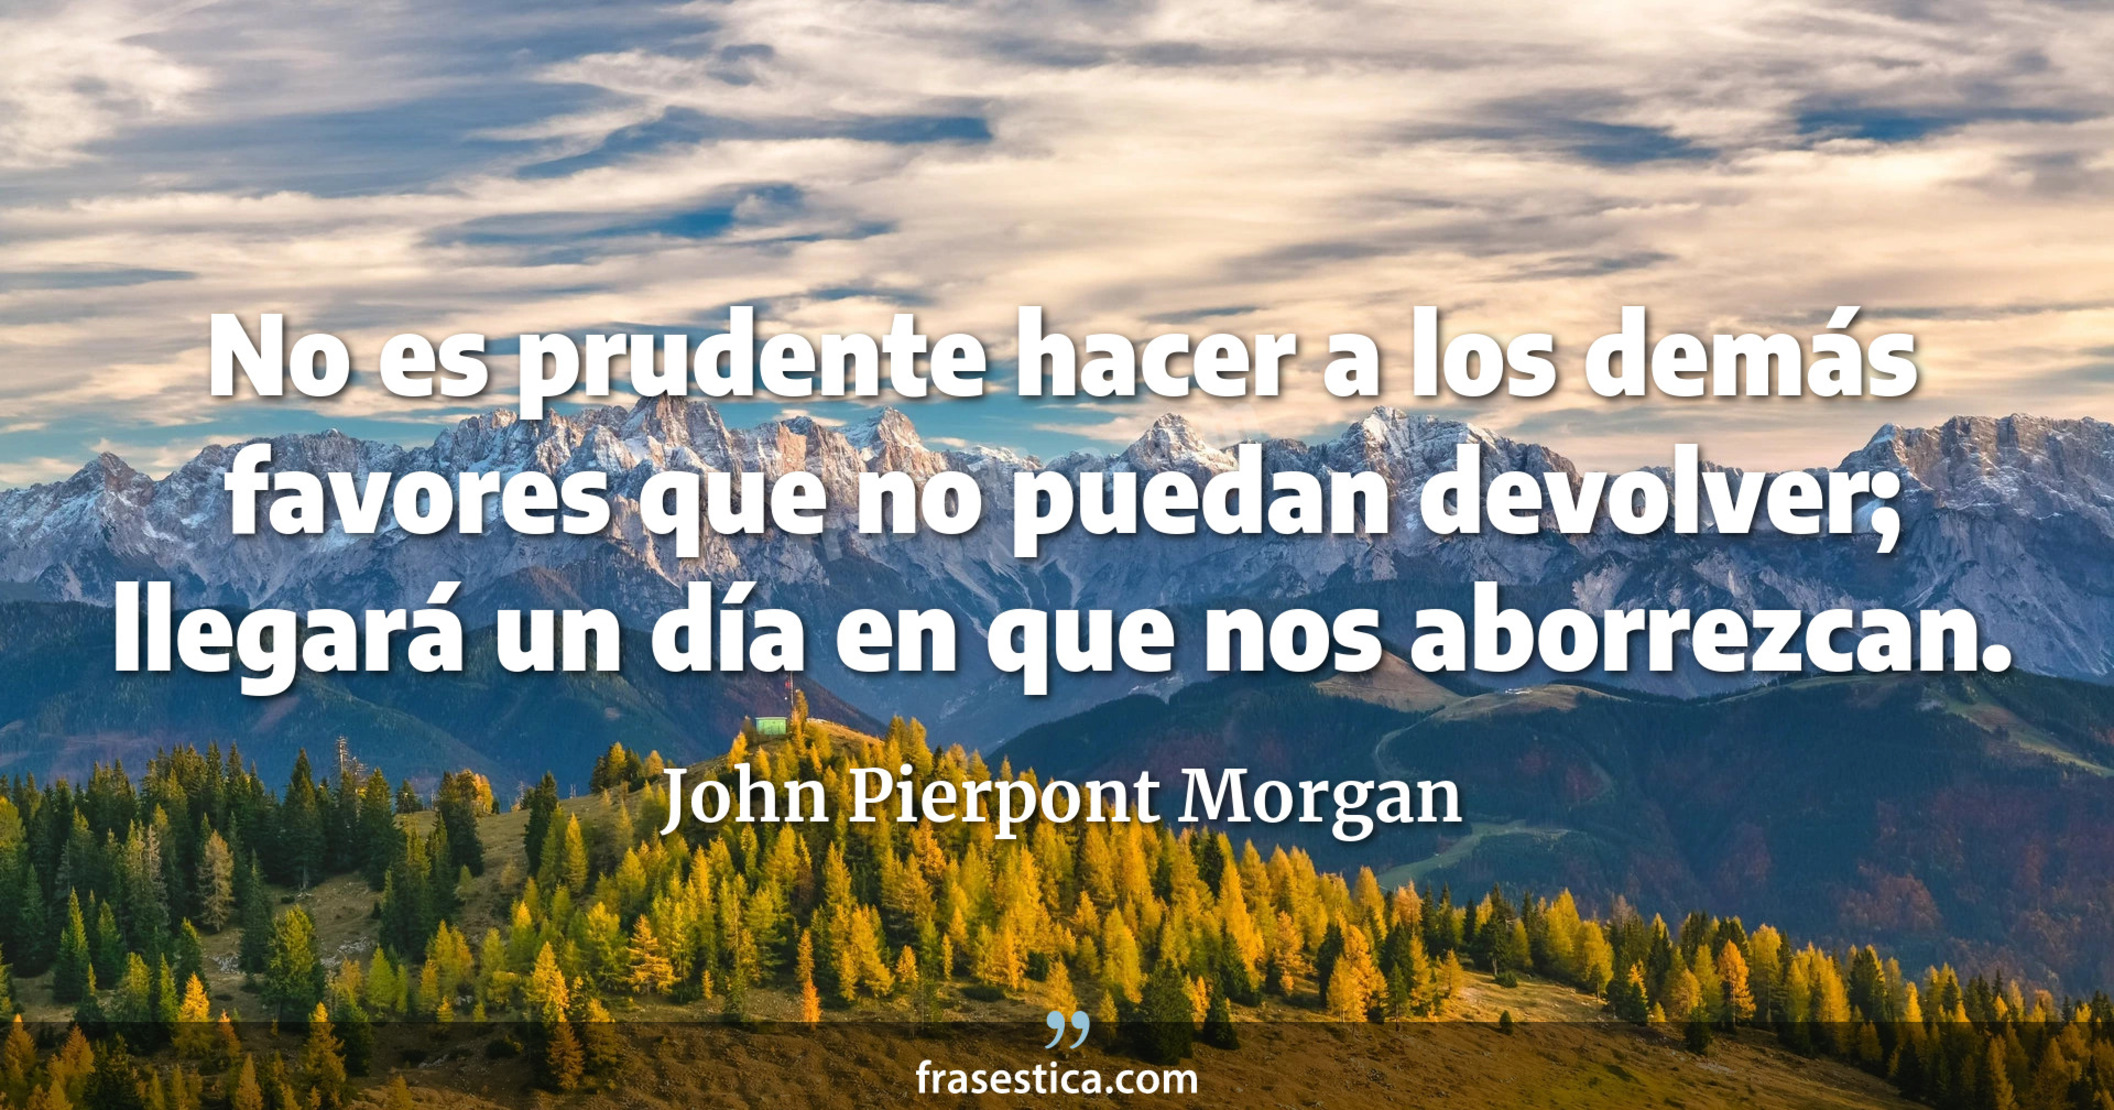 No es prudente hacer a los demás favores que no puedan devolver; llegará un día en que nos aborrezcan. - John Pierpont Morgan